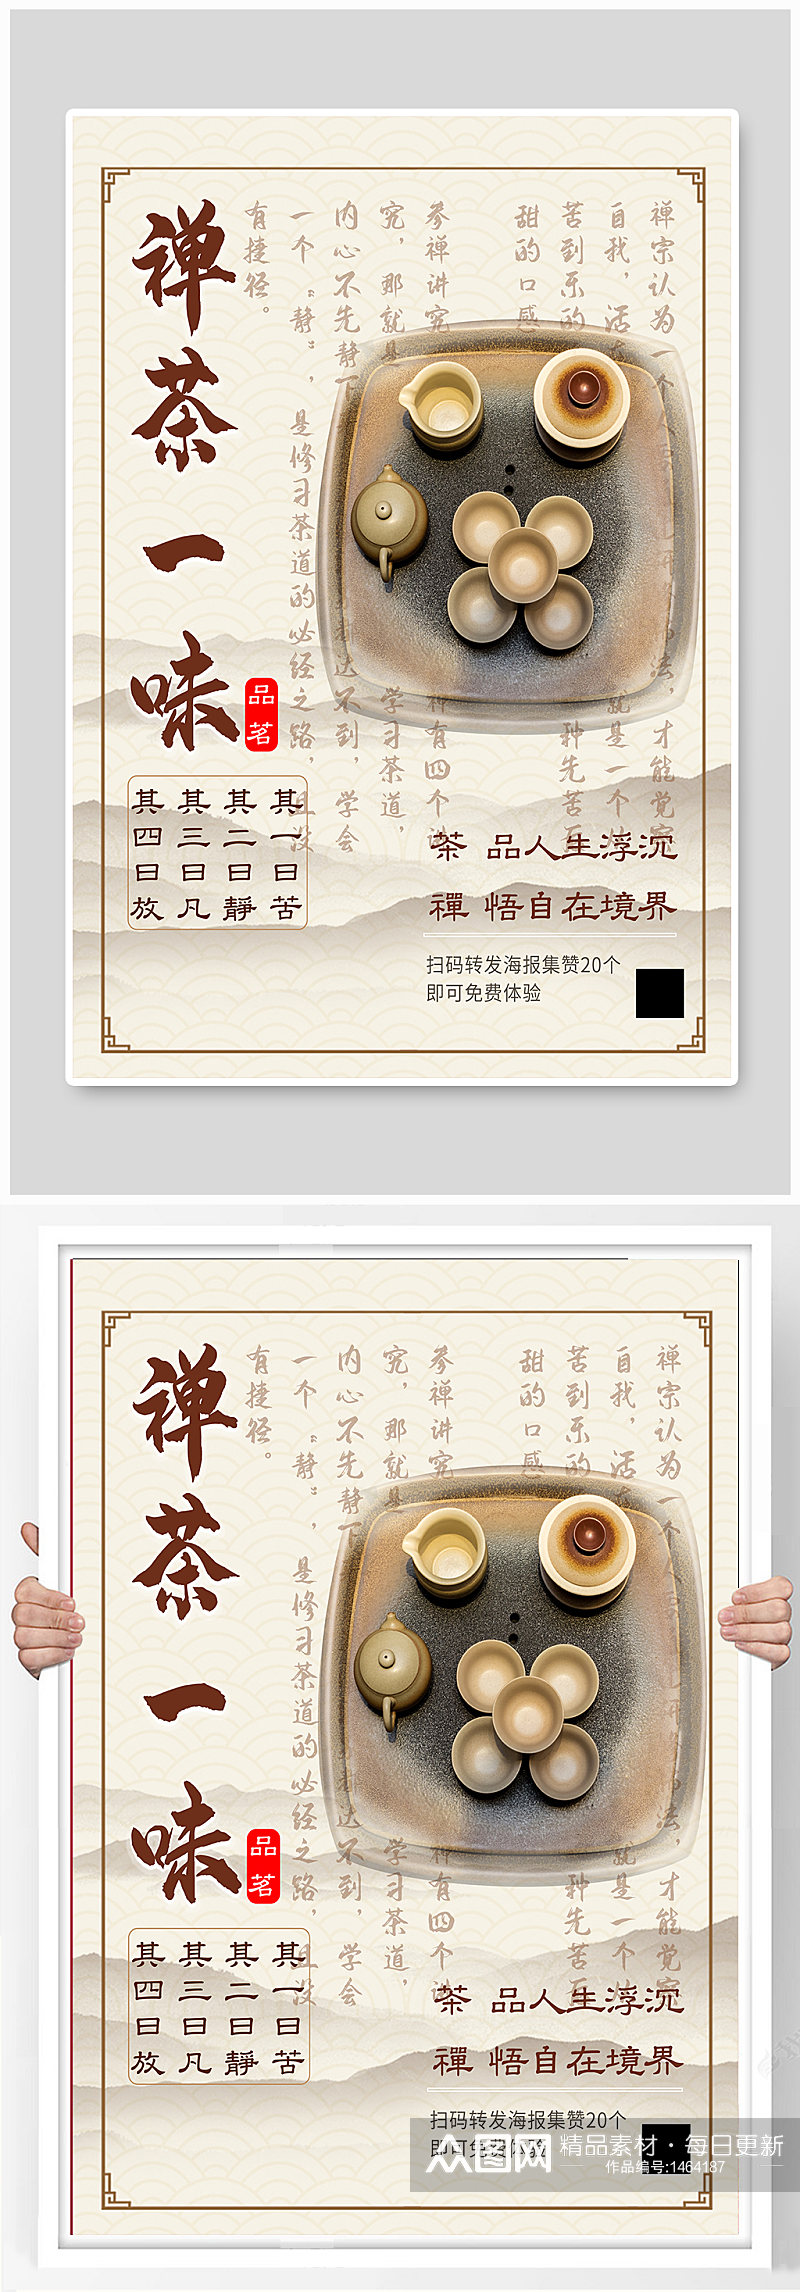 禅茶一味免费体验推广宣传古典文艺中国风素材